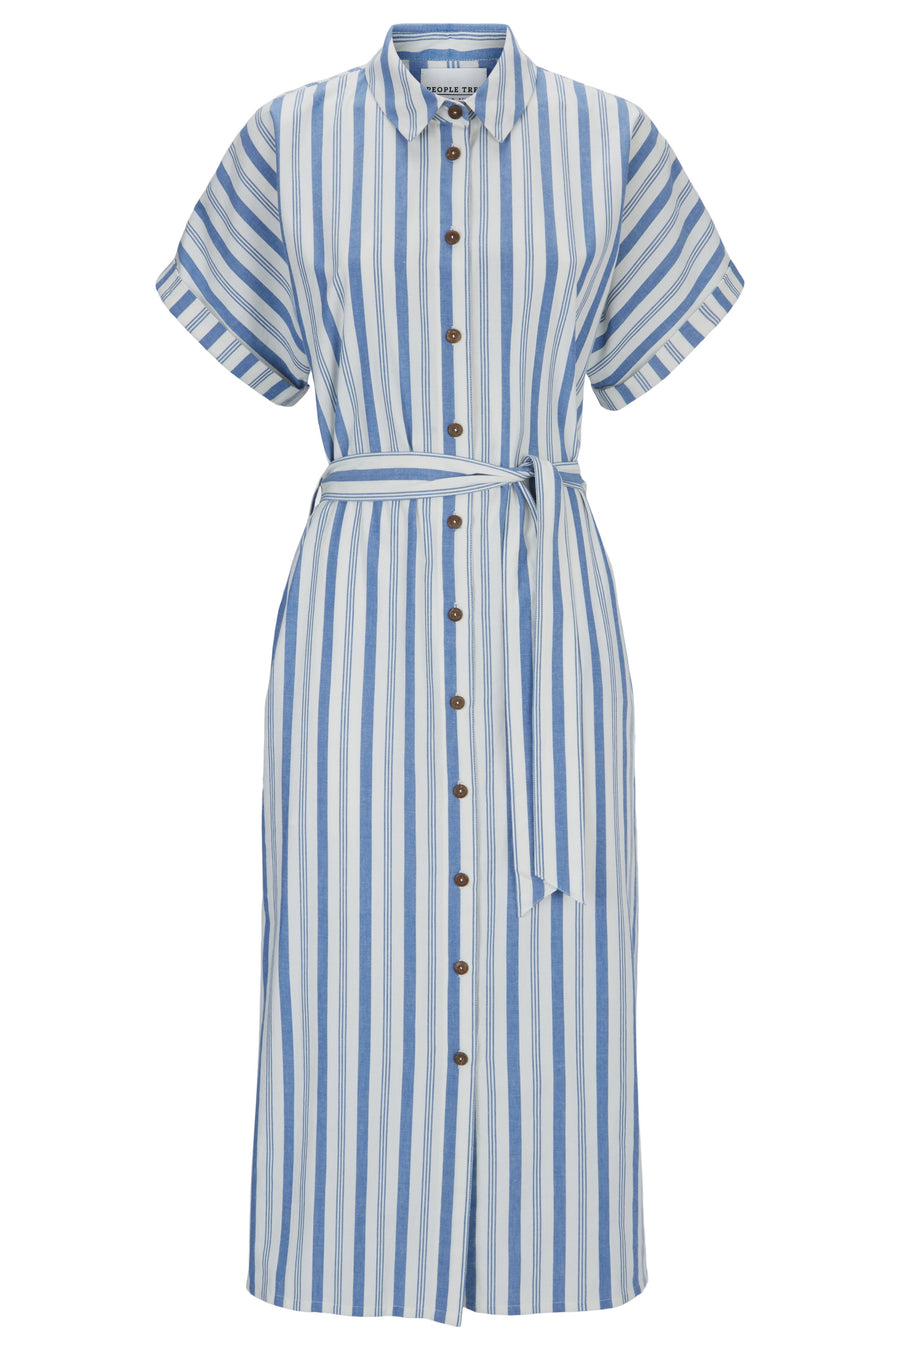 People Tree Fairer Handel, ethisches und nachhaltiges Bessie gestreiftes Kleid in blauem Streifen 100% Bio -Baumwolle